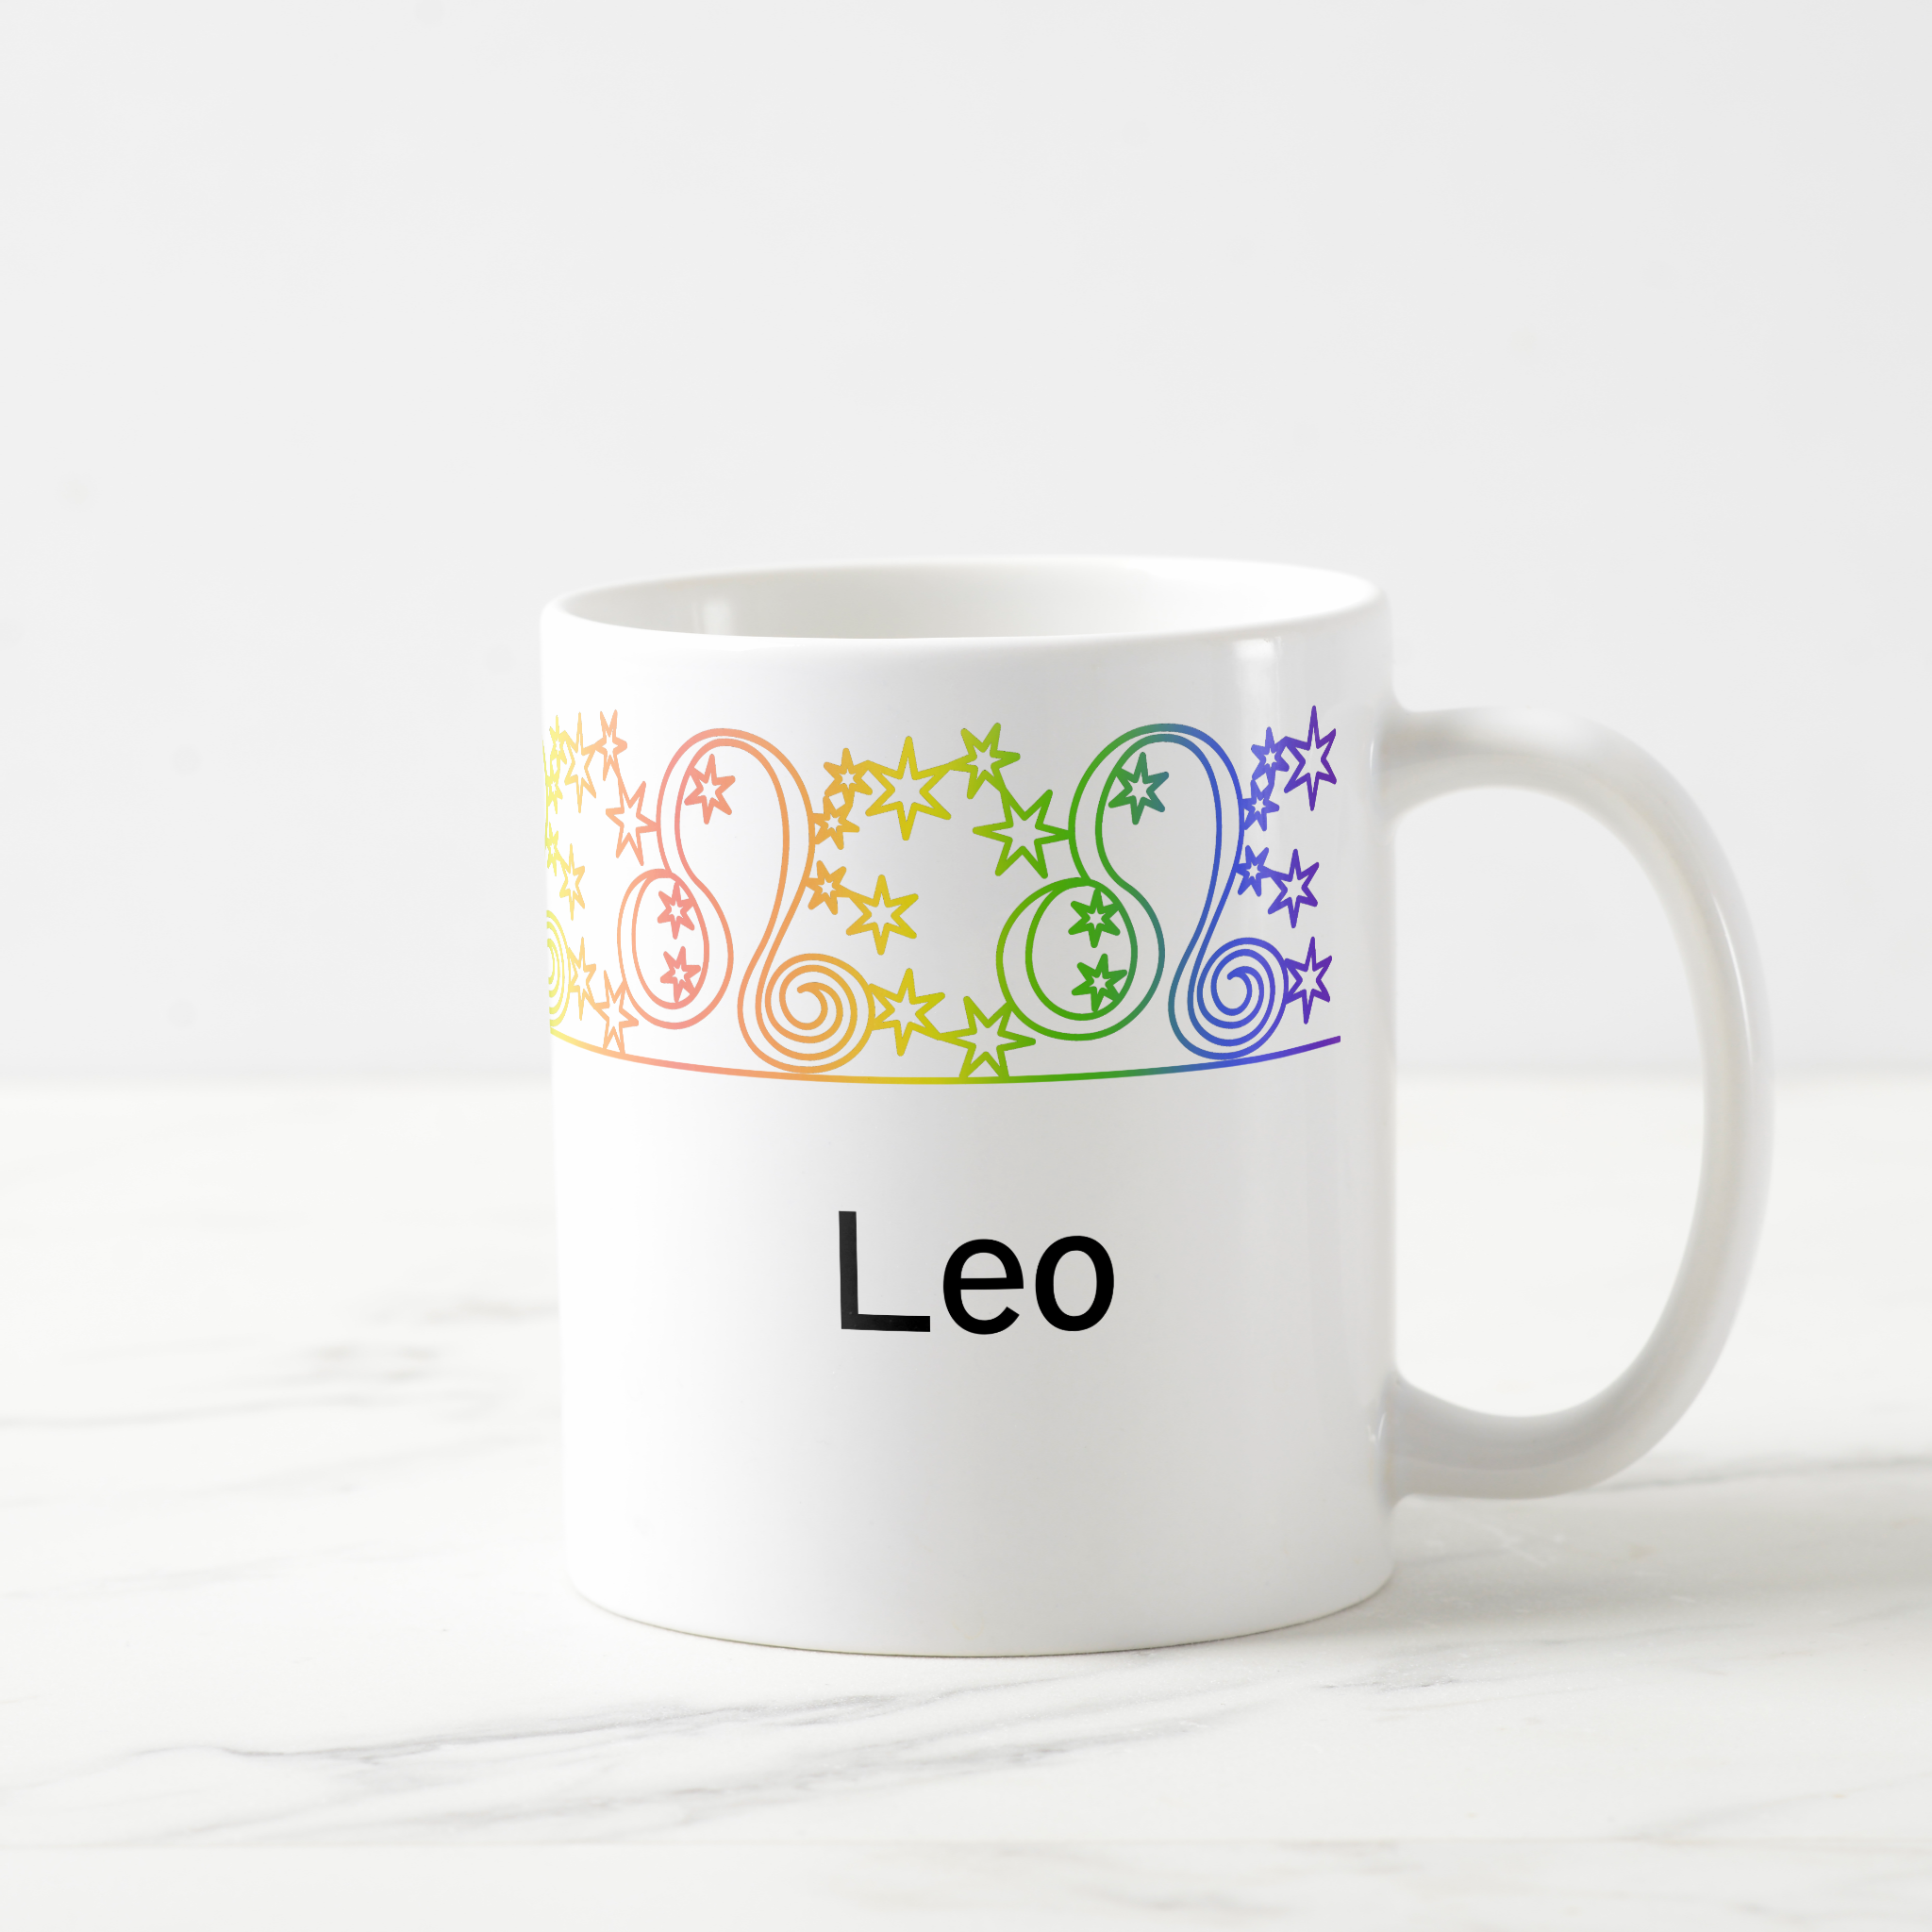 Leo Personalized Mug